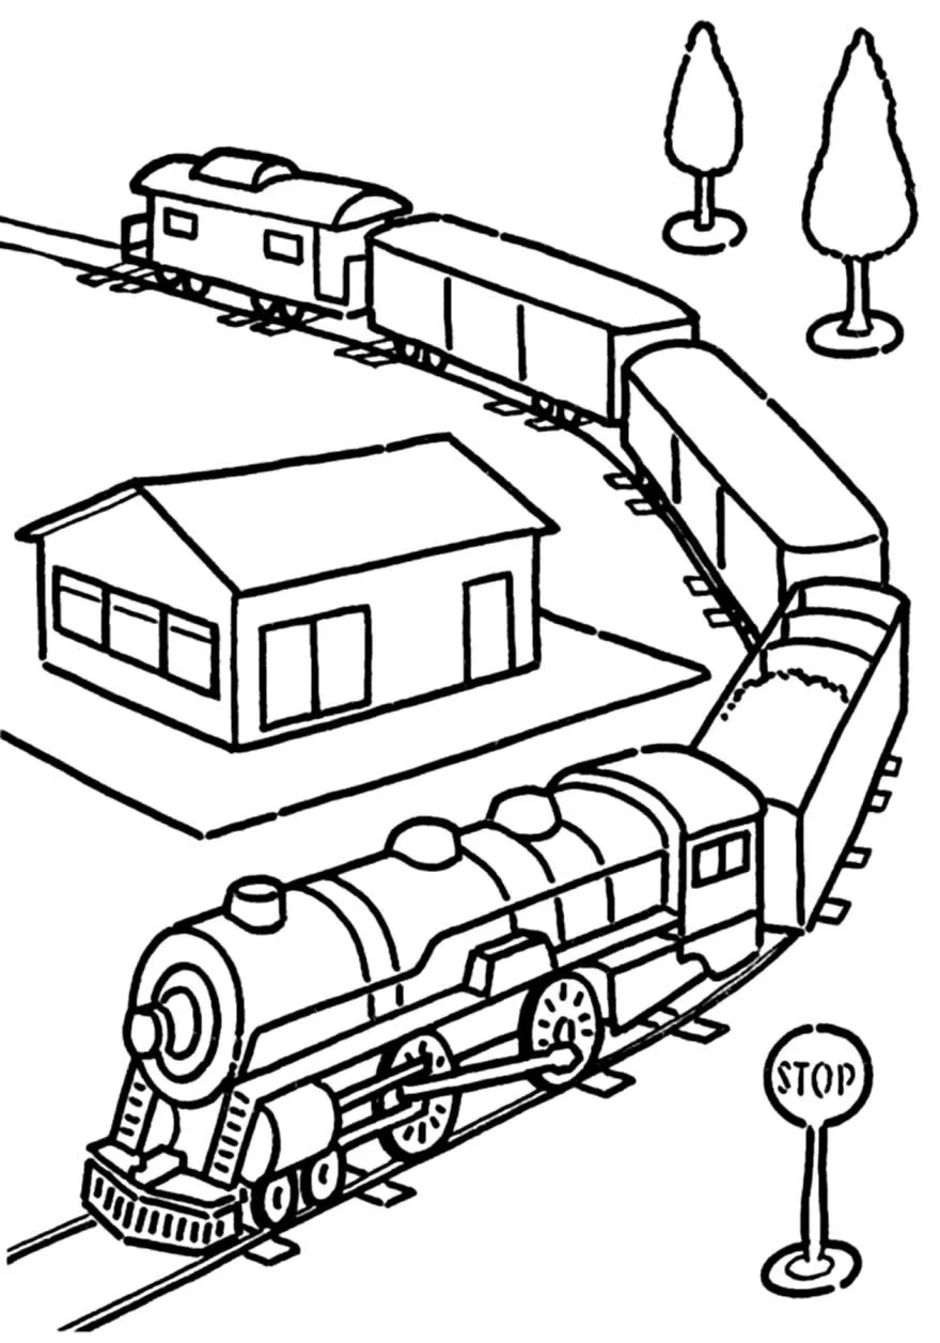 страница 6 | Страницы раскрашивания поездов Изображения – скачать бесплатно на Freepik